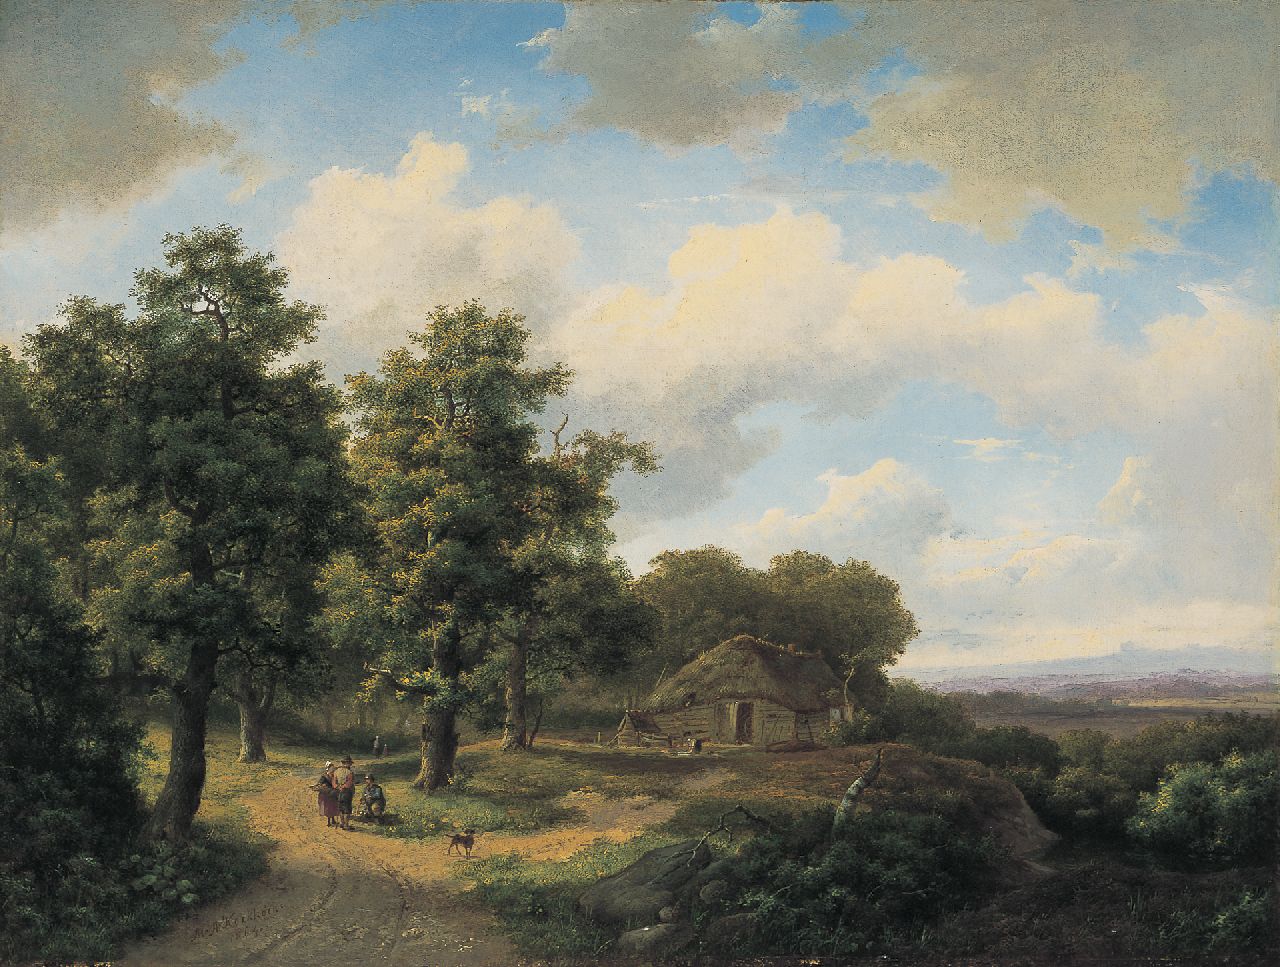 Koekkoek I M.A.  | Marinus Adrianus Koekkoek I, Landvolk op een pad langs de bosrand, olieverf op doek 46,7 x 61,7 cm, gesigneerd linksonder en gedateerd 1864